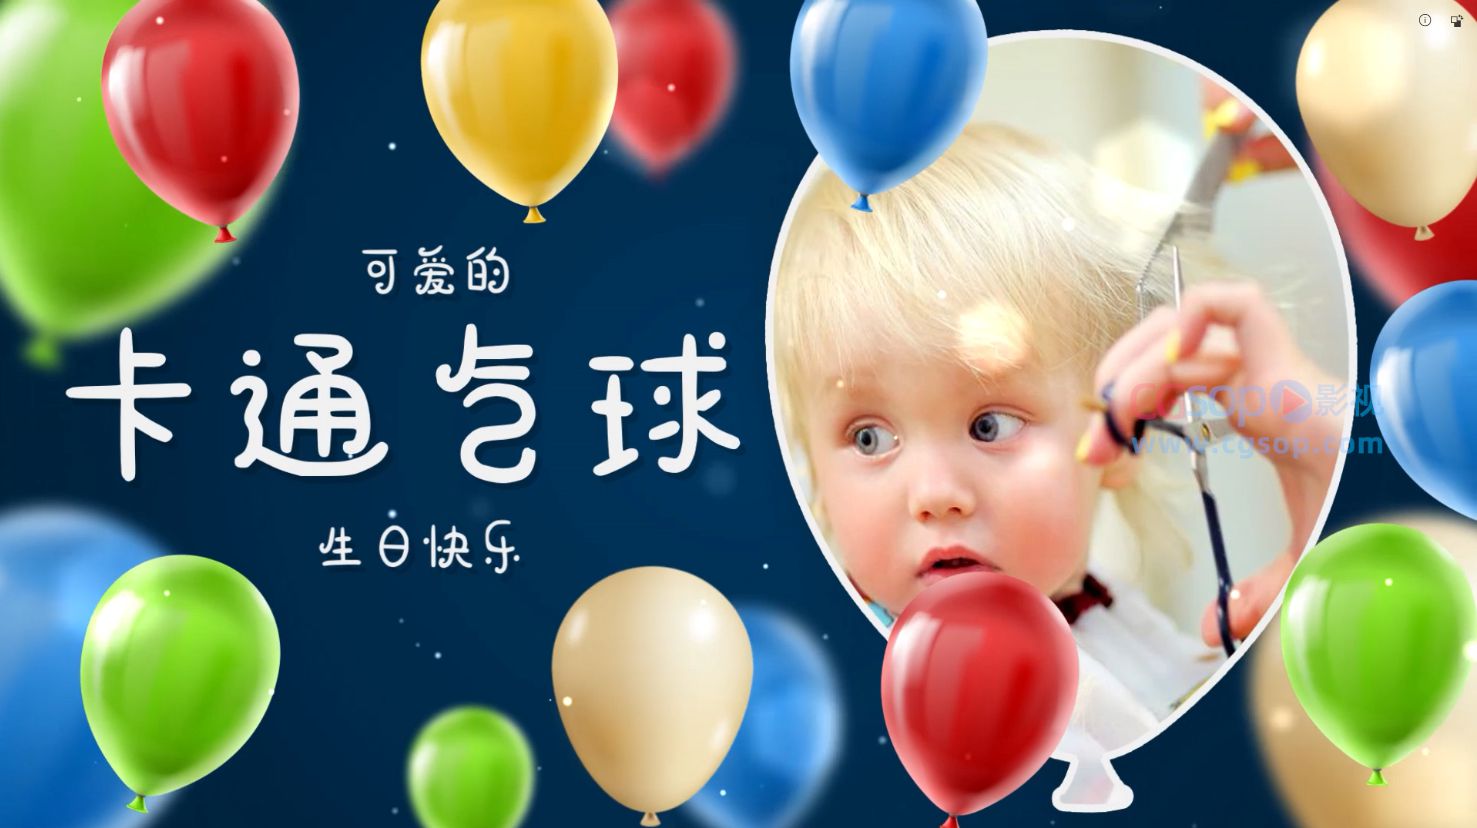 庆祝生日快乐儿童节气球图文展示AE模板